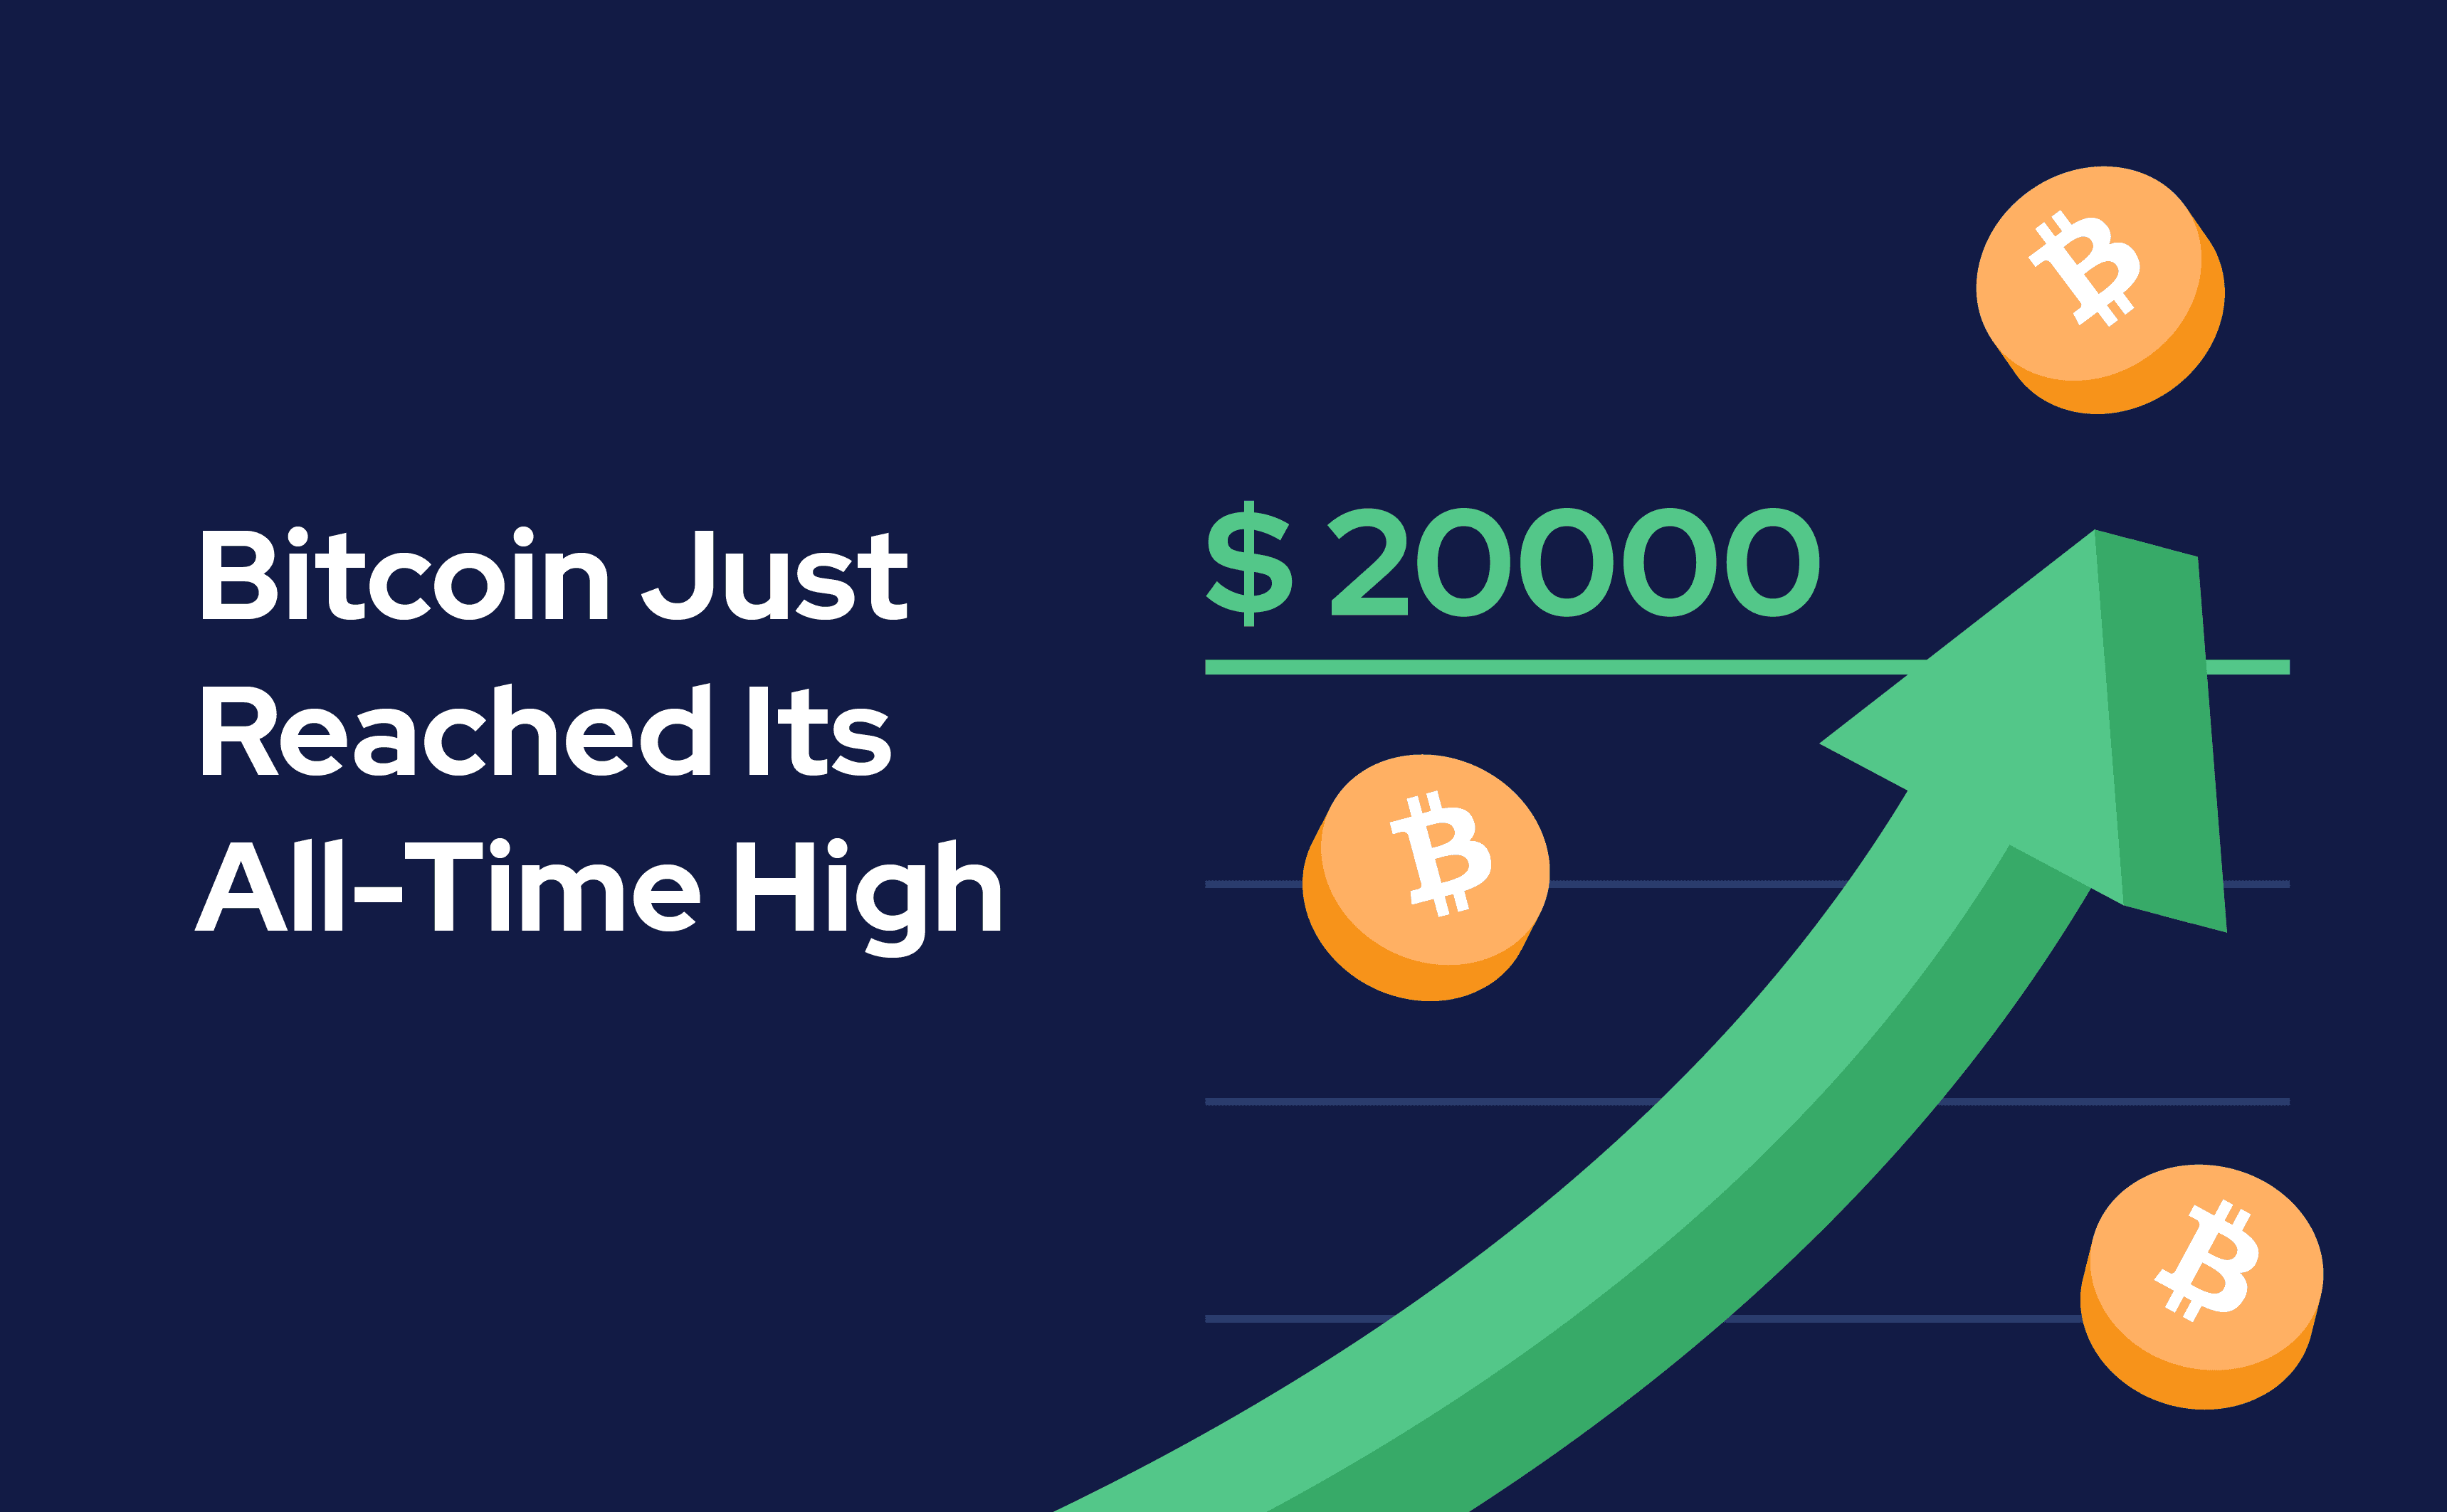  Bitcoin pasiekė aukščiausią visų laikų kainą – 20 000 USD.